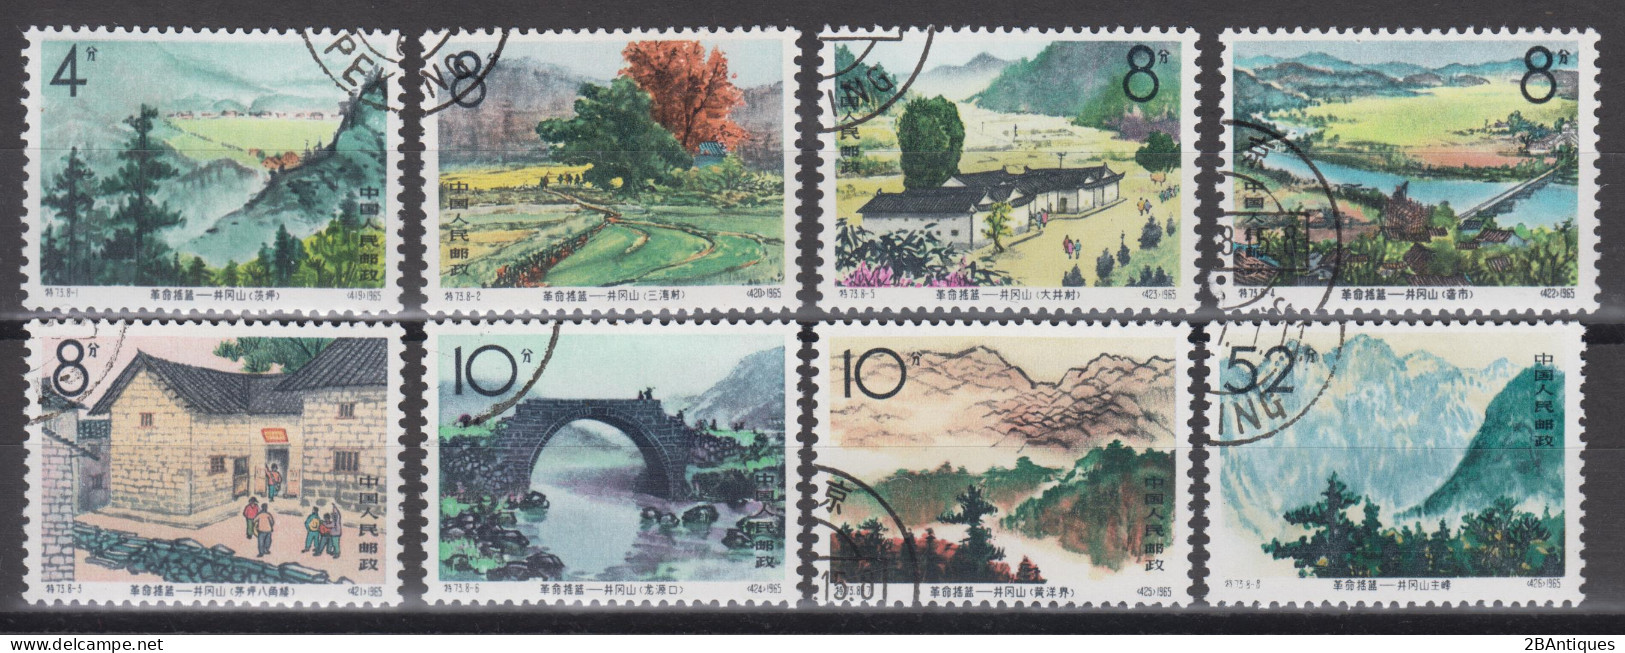 PR CHINA 1965 - Chingkang Mountains CTO OG XF - Used Stamps